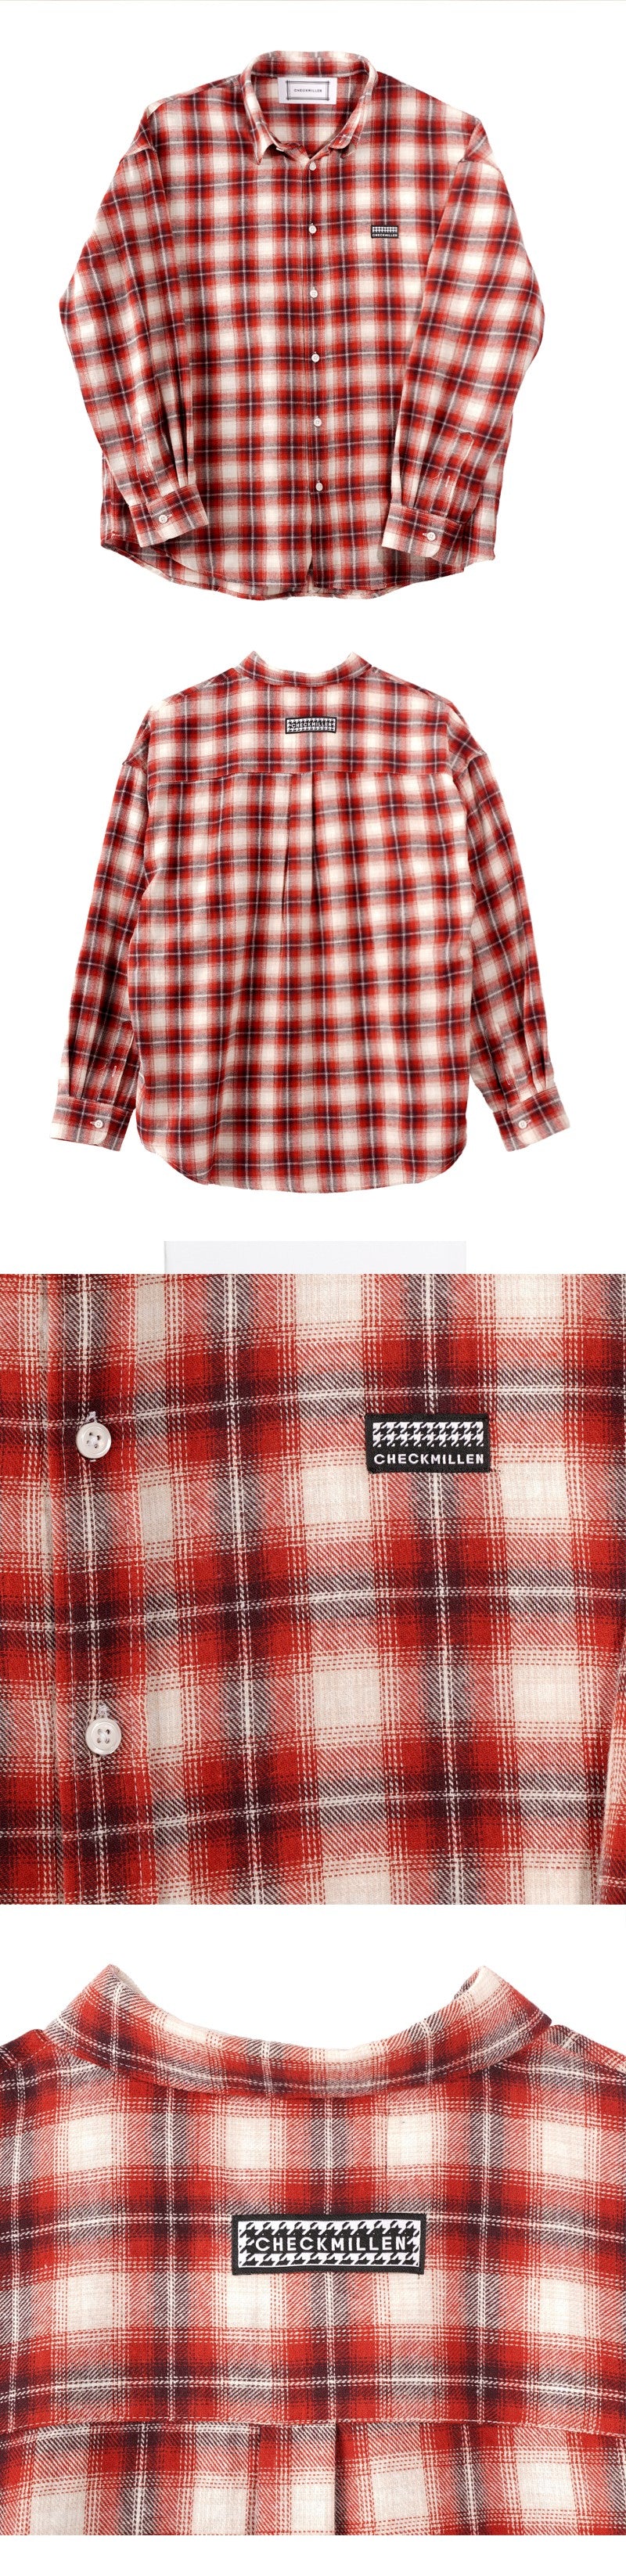 タータンプレイドツイルシャツ / TARTAN PLAID TWILL SHIRT (RED)